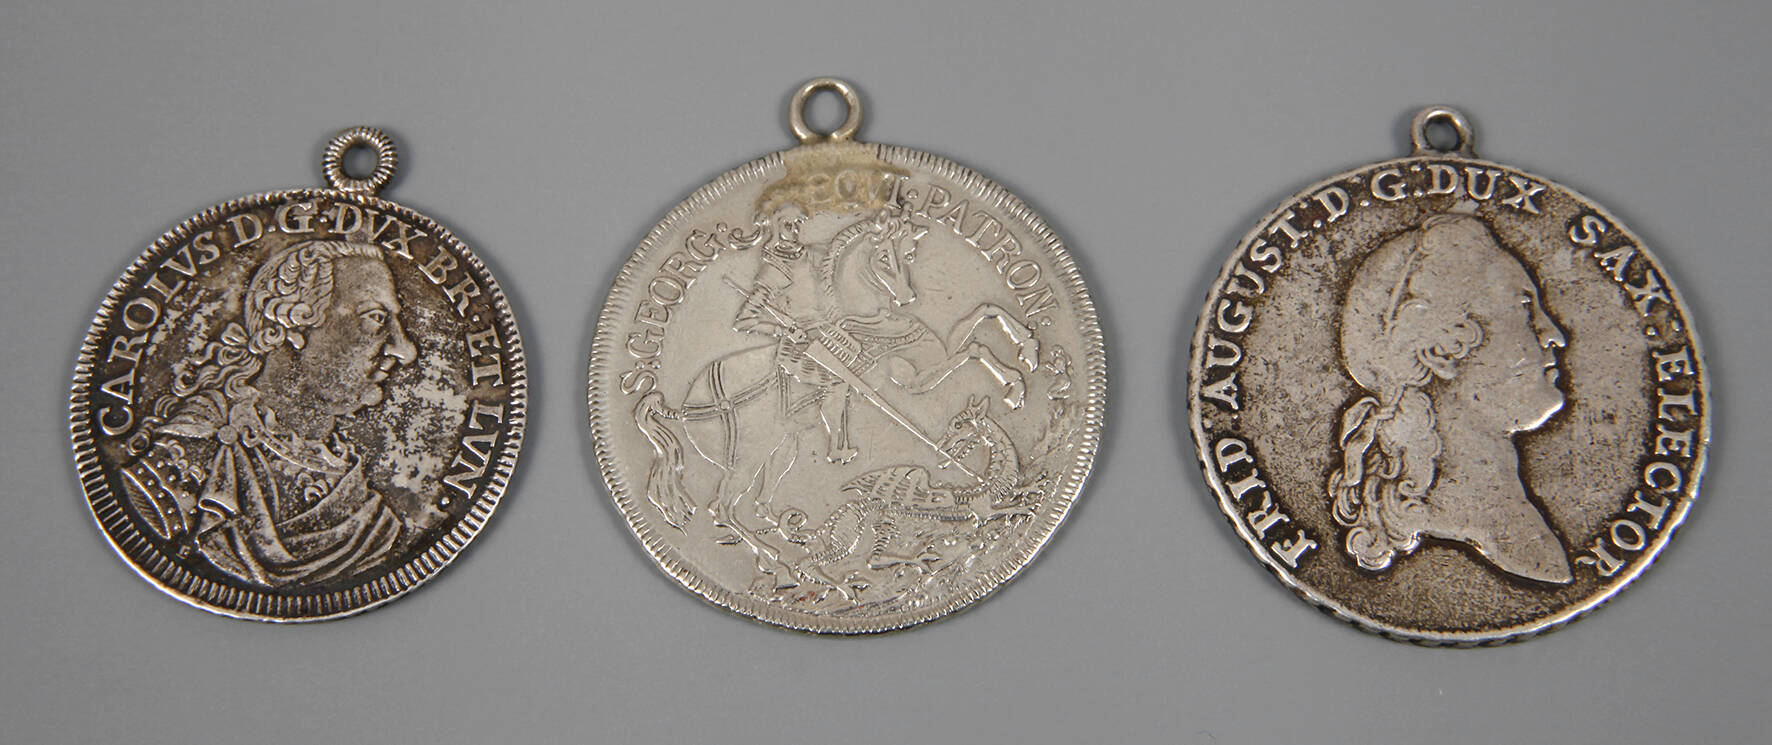 Drei gehenkelte historische Münzen